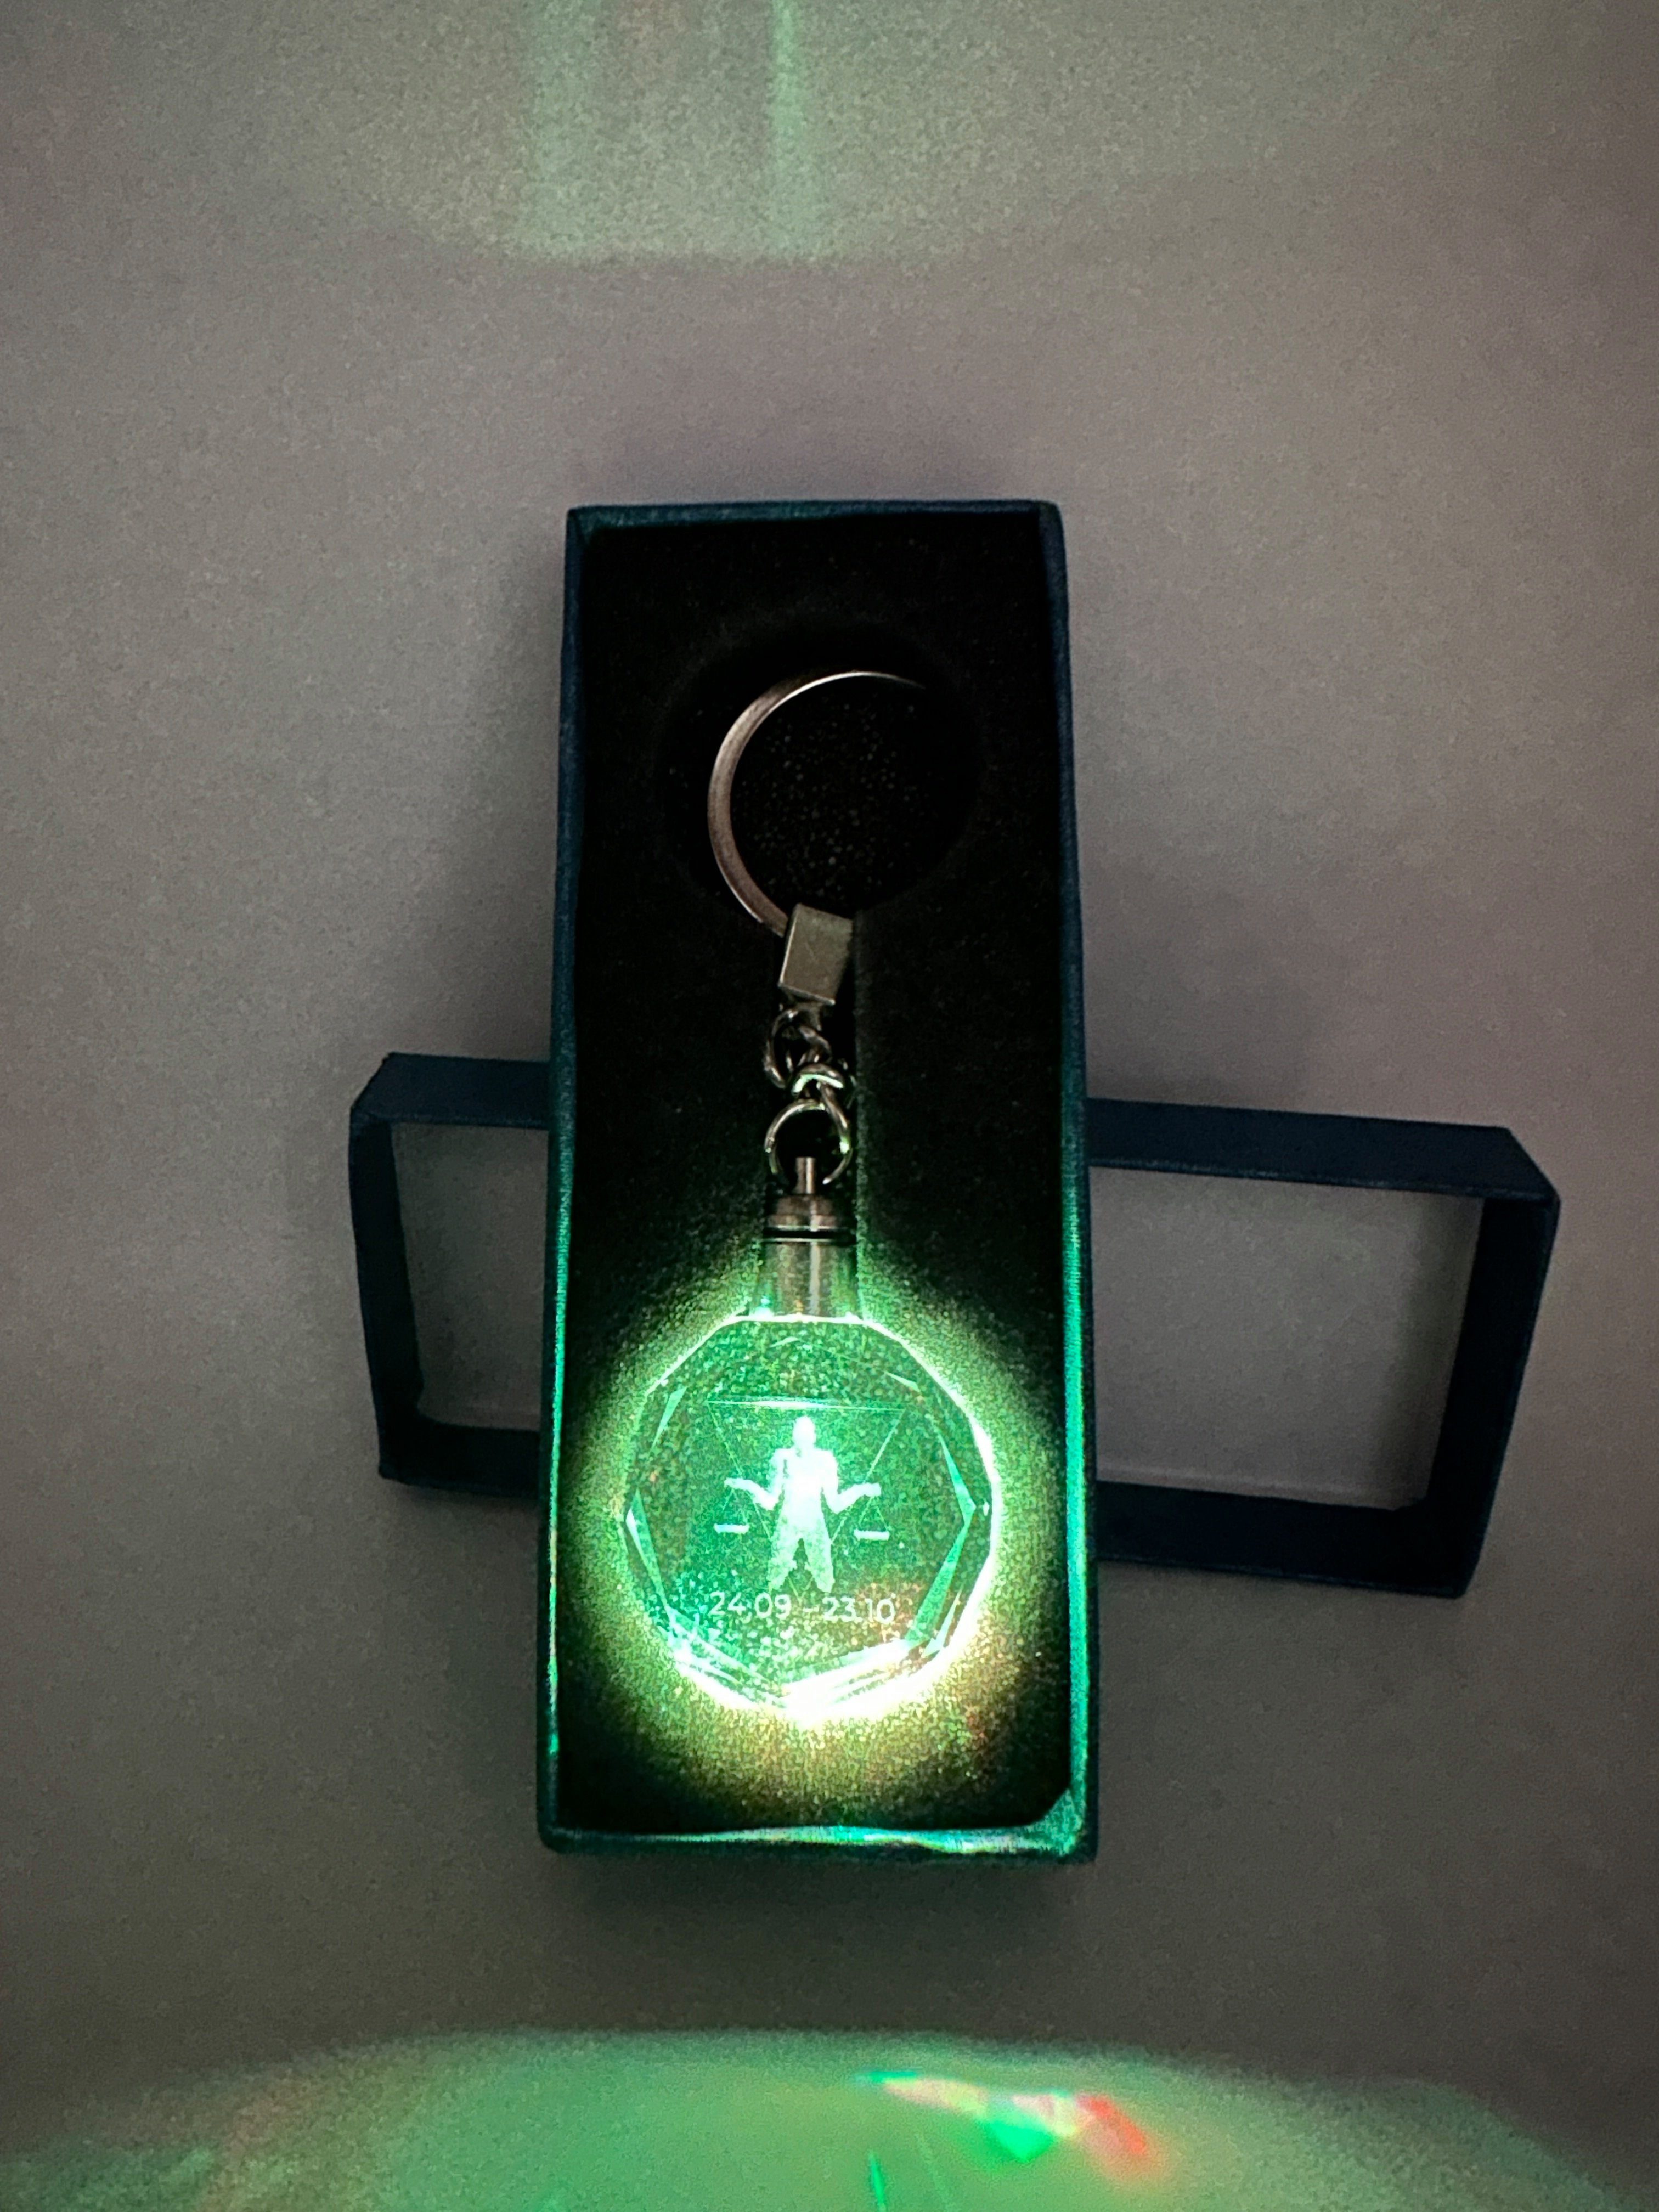 [Super beliebte Artikelnummer! ] Stelby Schlüsselanhänger Waage LED Schlüsselanhänger Multicolor Sternzeichen mit Geschenkbox